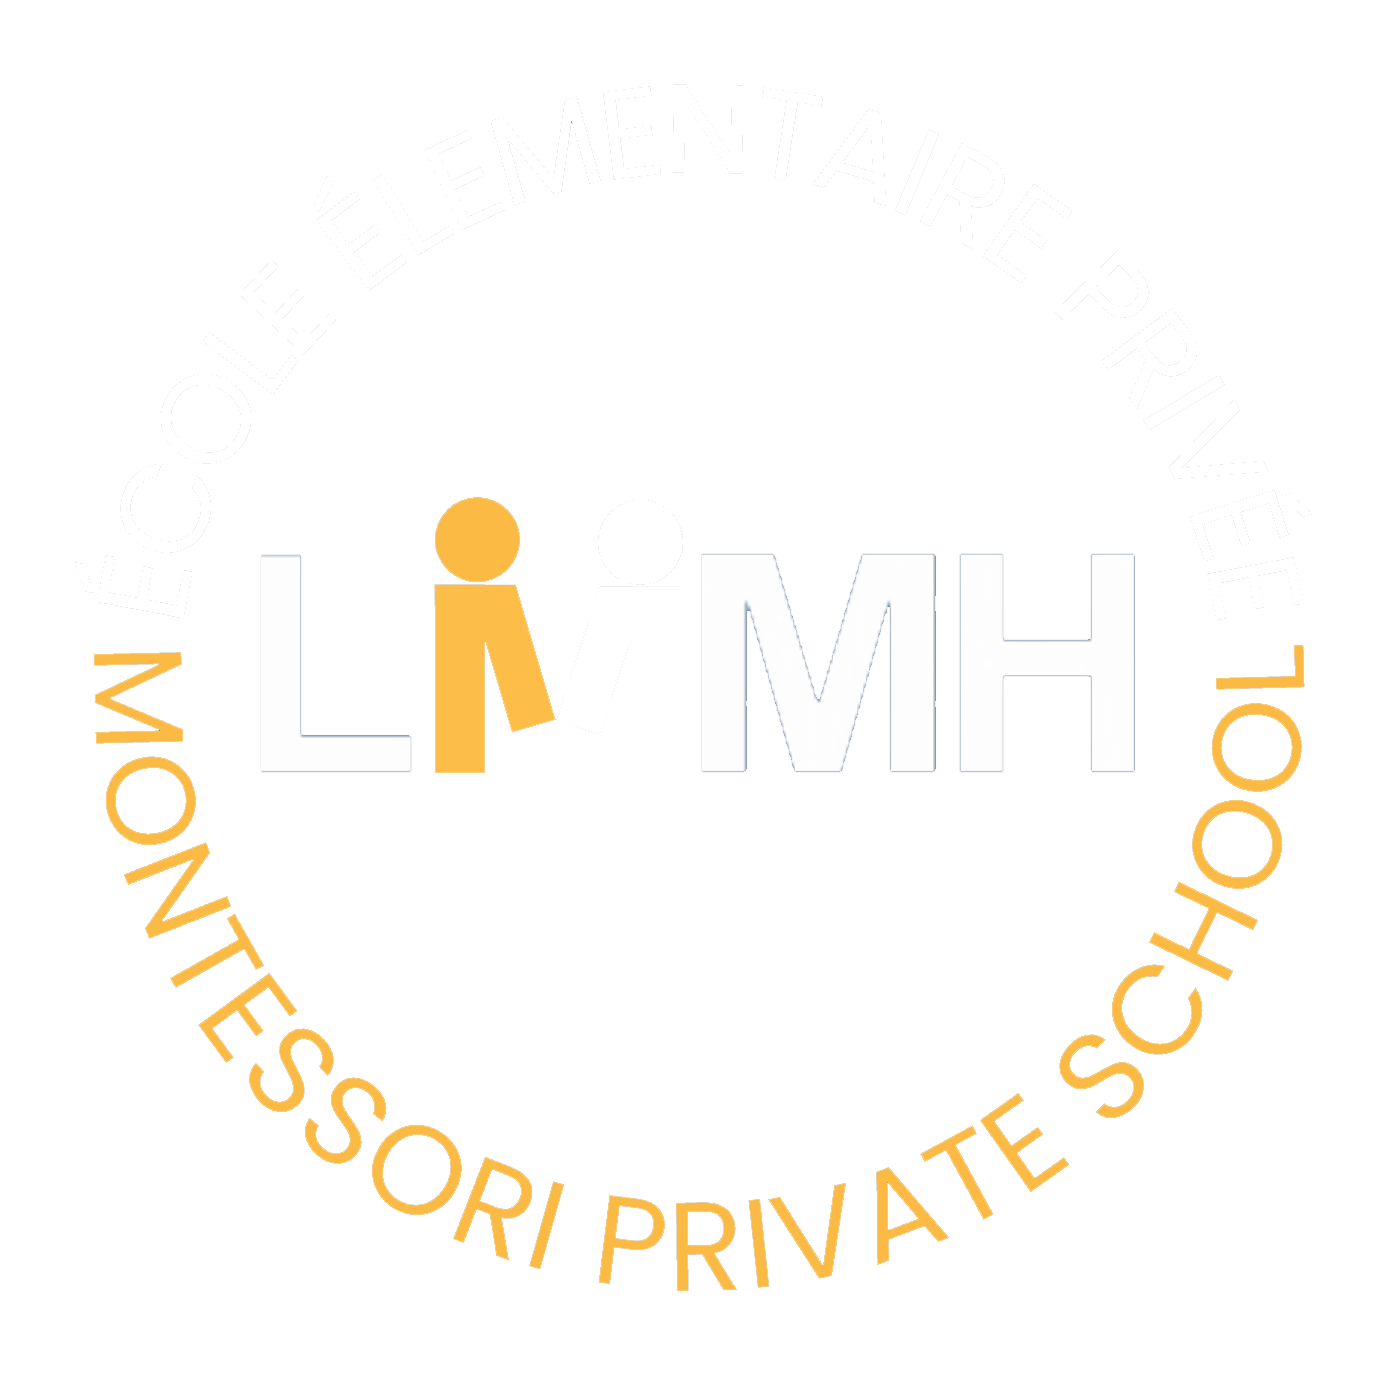 lmmh logo full